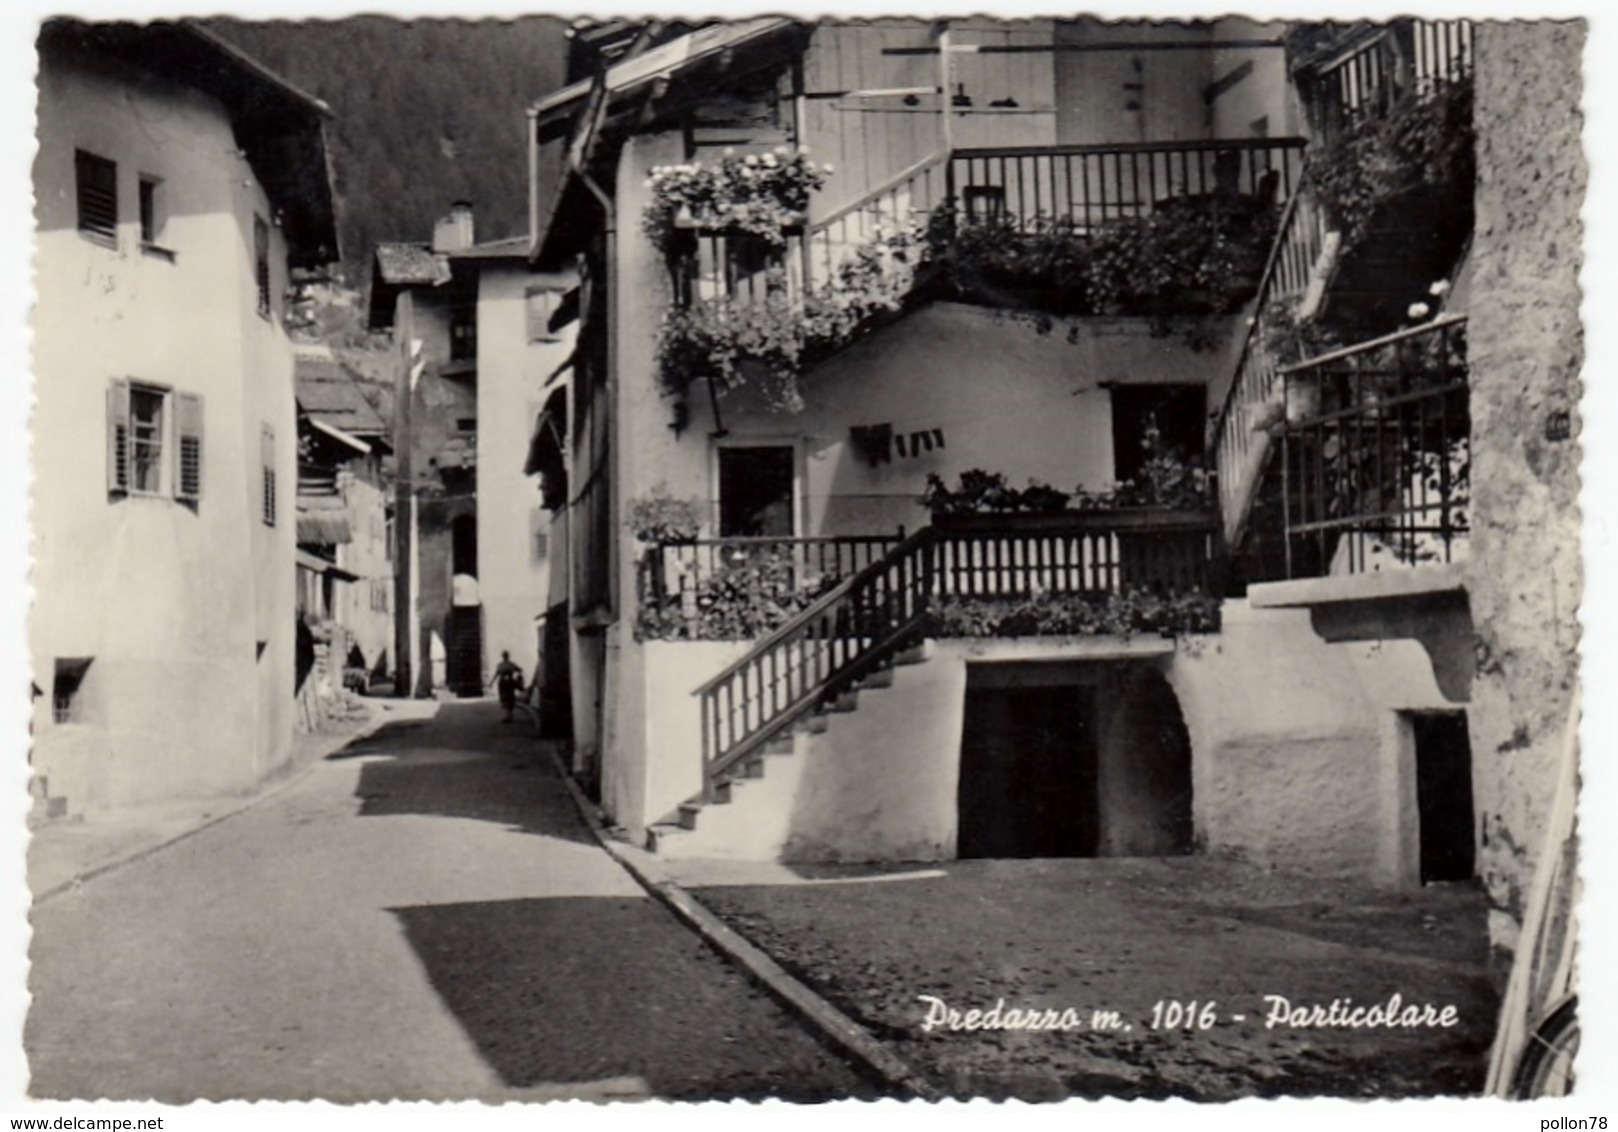 PREDAZZO - PARTICOLARE - TRENTO - 1958 - Trento